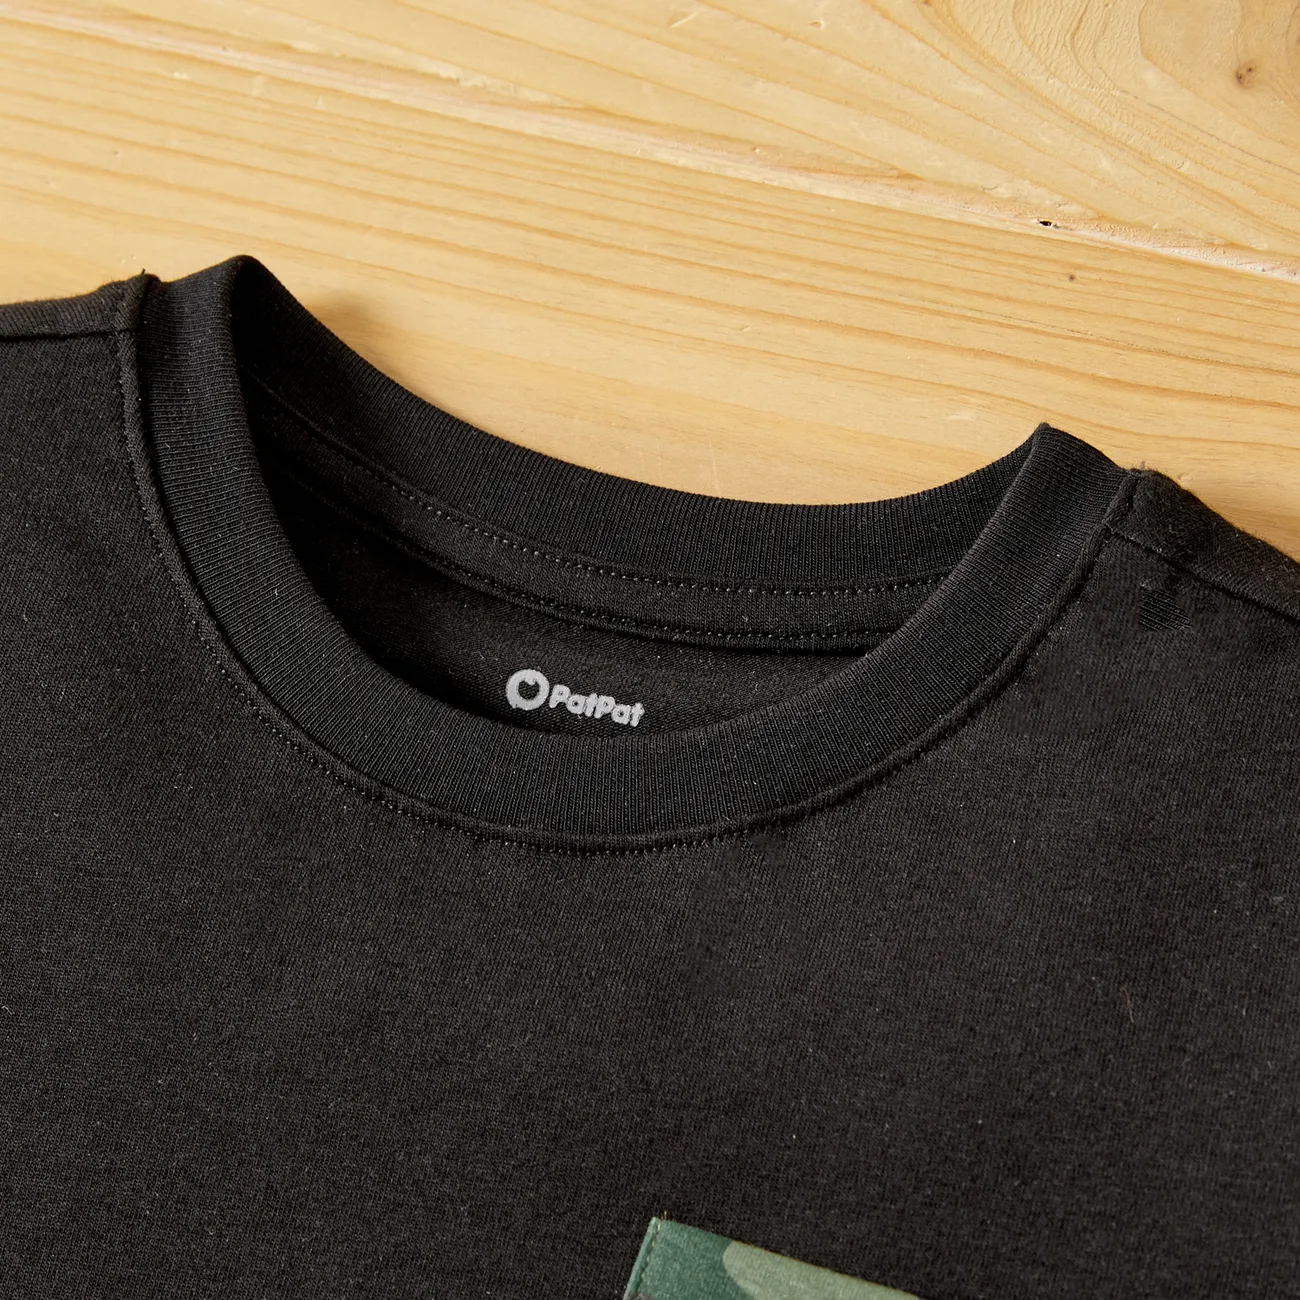 2-teiliges Kurzarm-T-Shirt mit Taschendesign für Kleinkinder/Jungen und Shorts mit Camouflage-Print schwarz big image 1